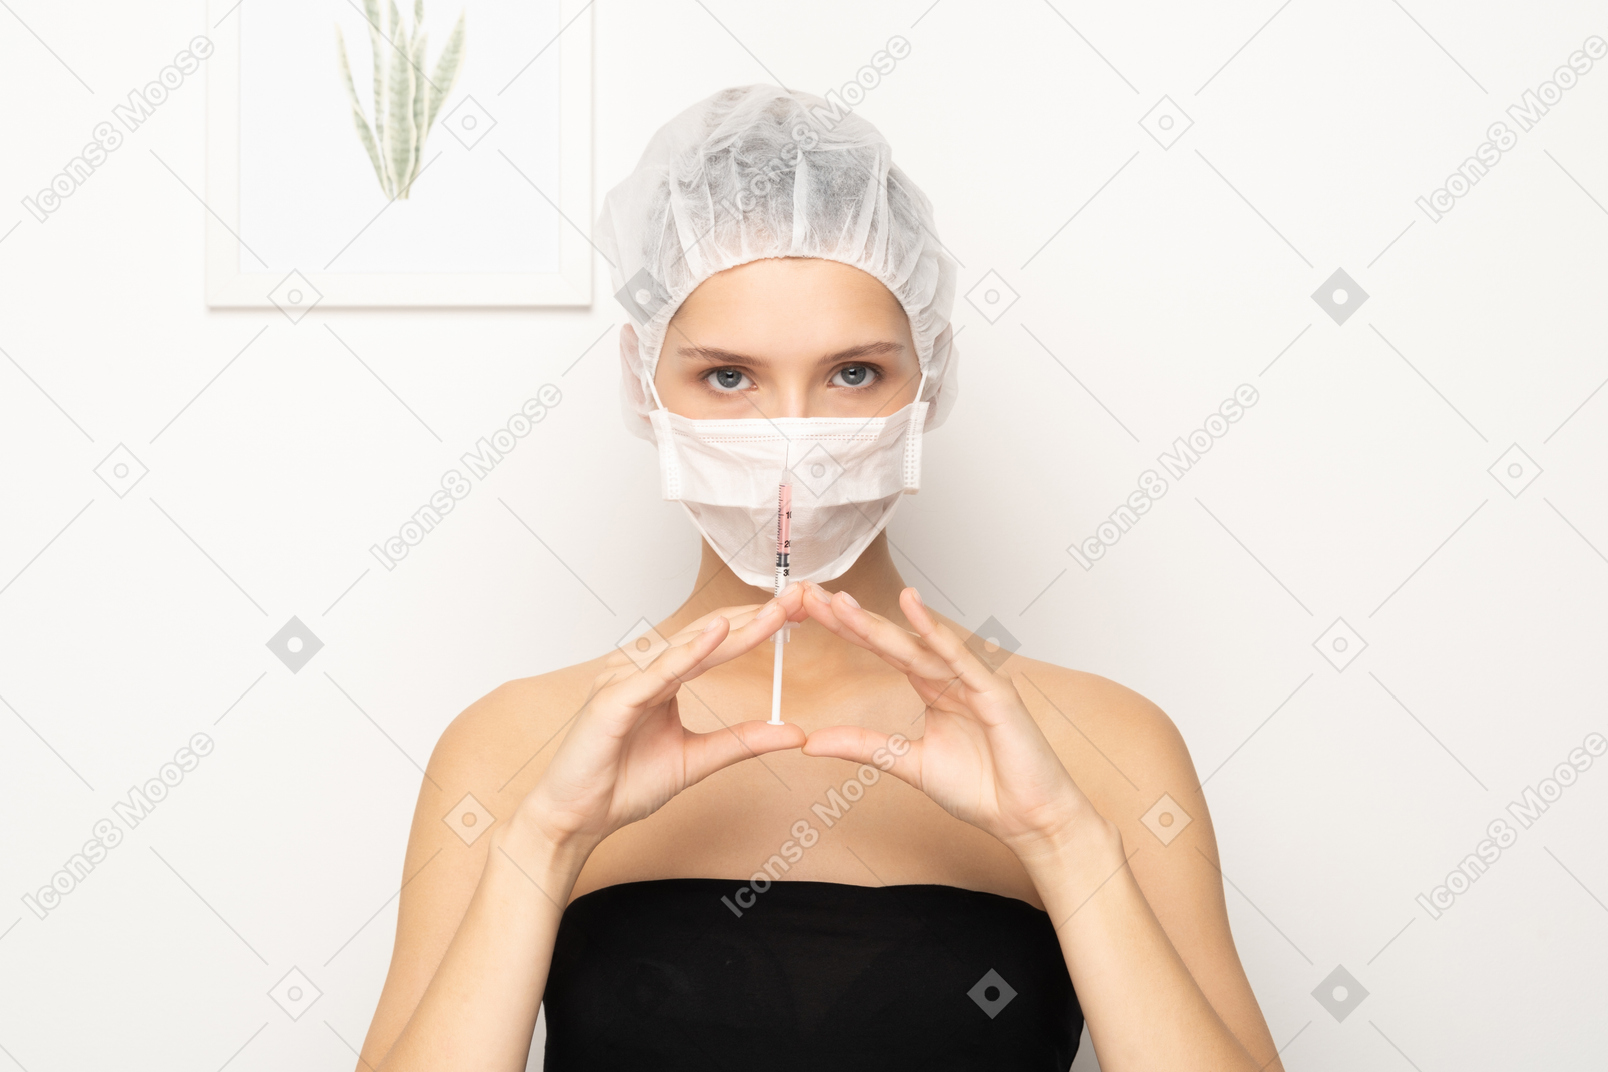 注射器を保持しているマスクの女性